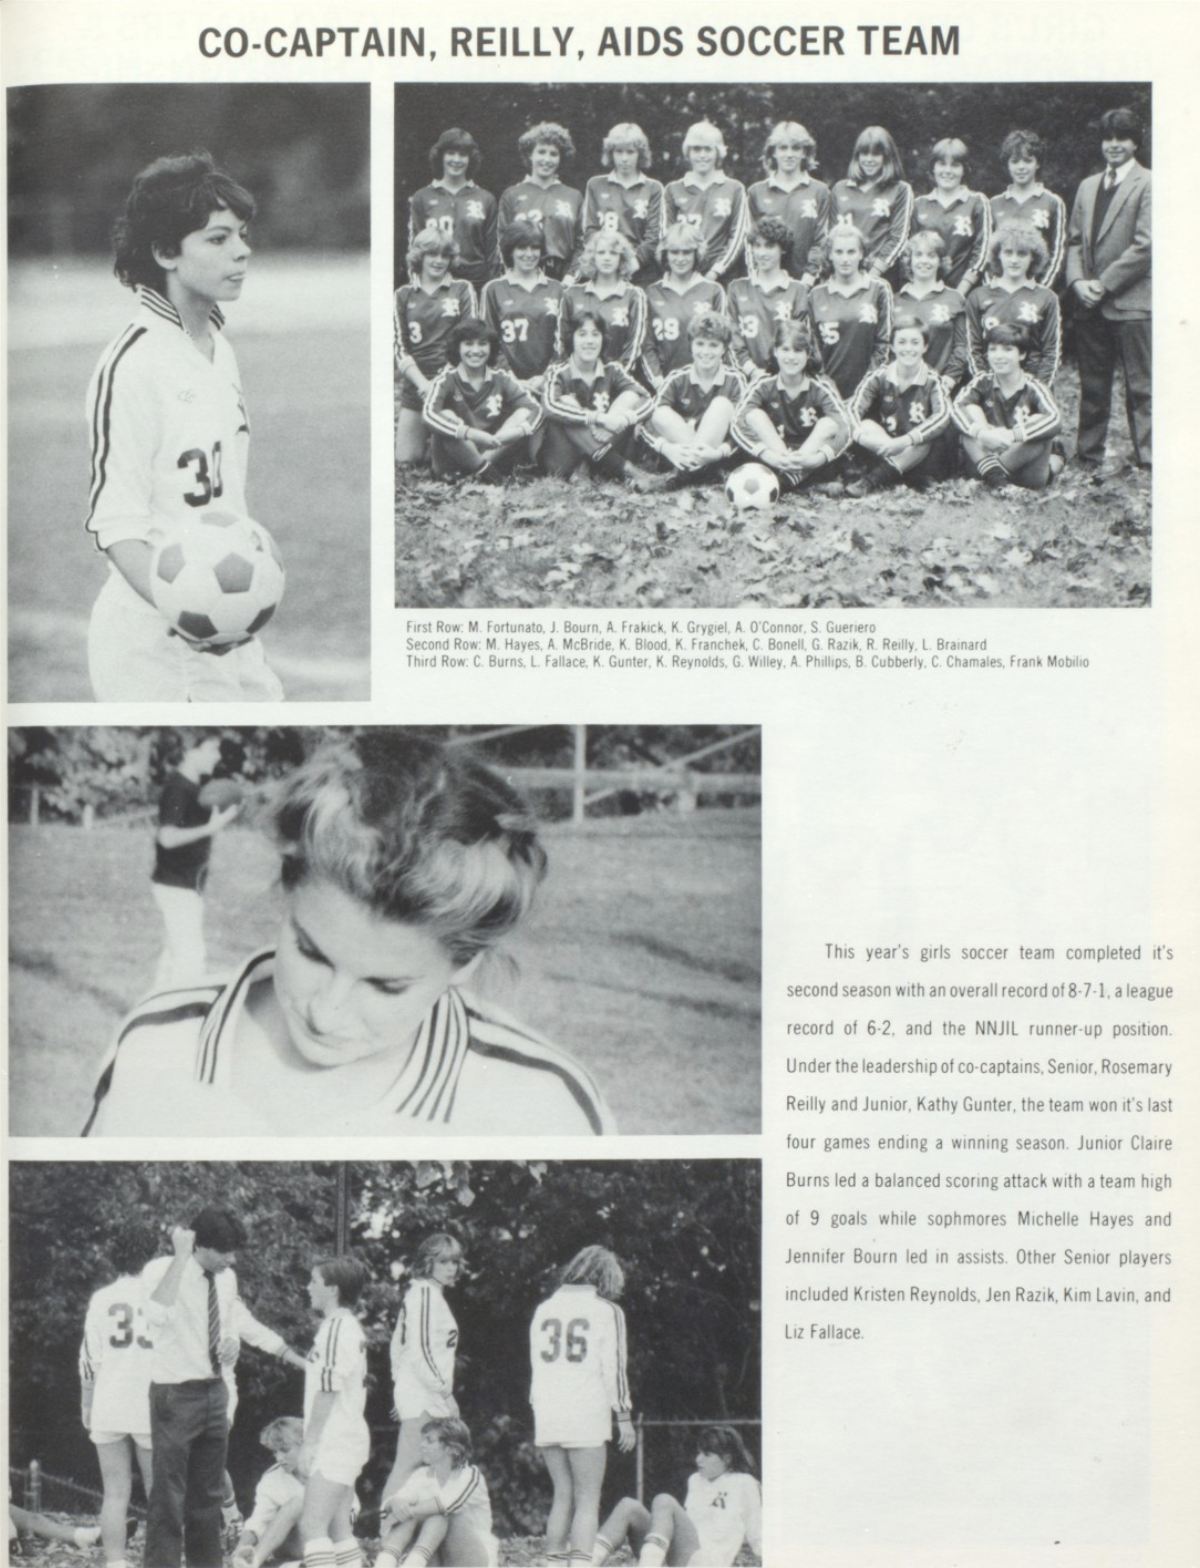 1985 Girls’ Soccer Team